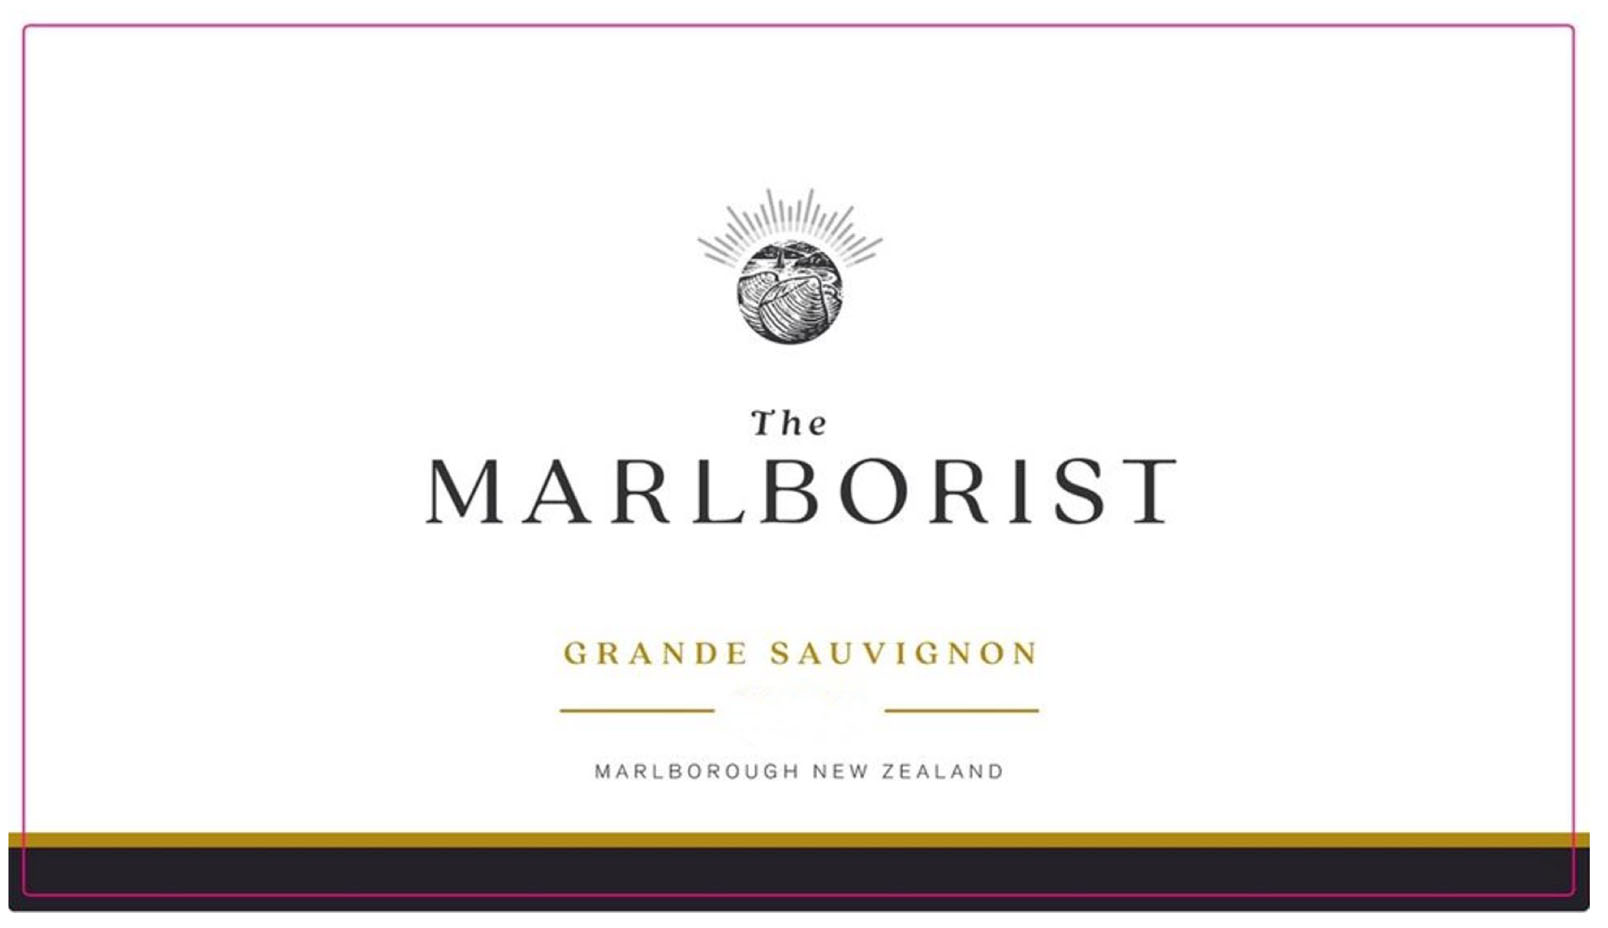 The Marlborist - Grande Sauvignon label